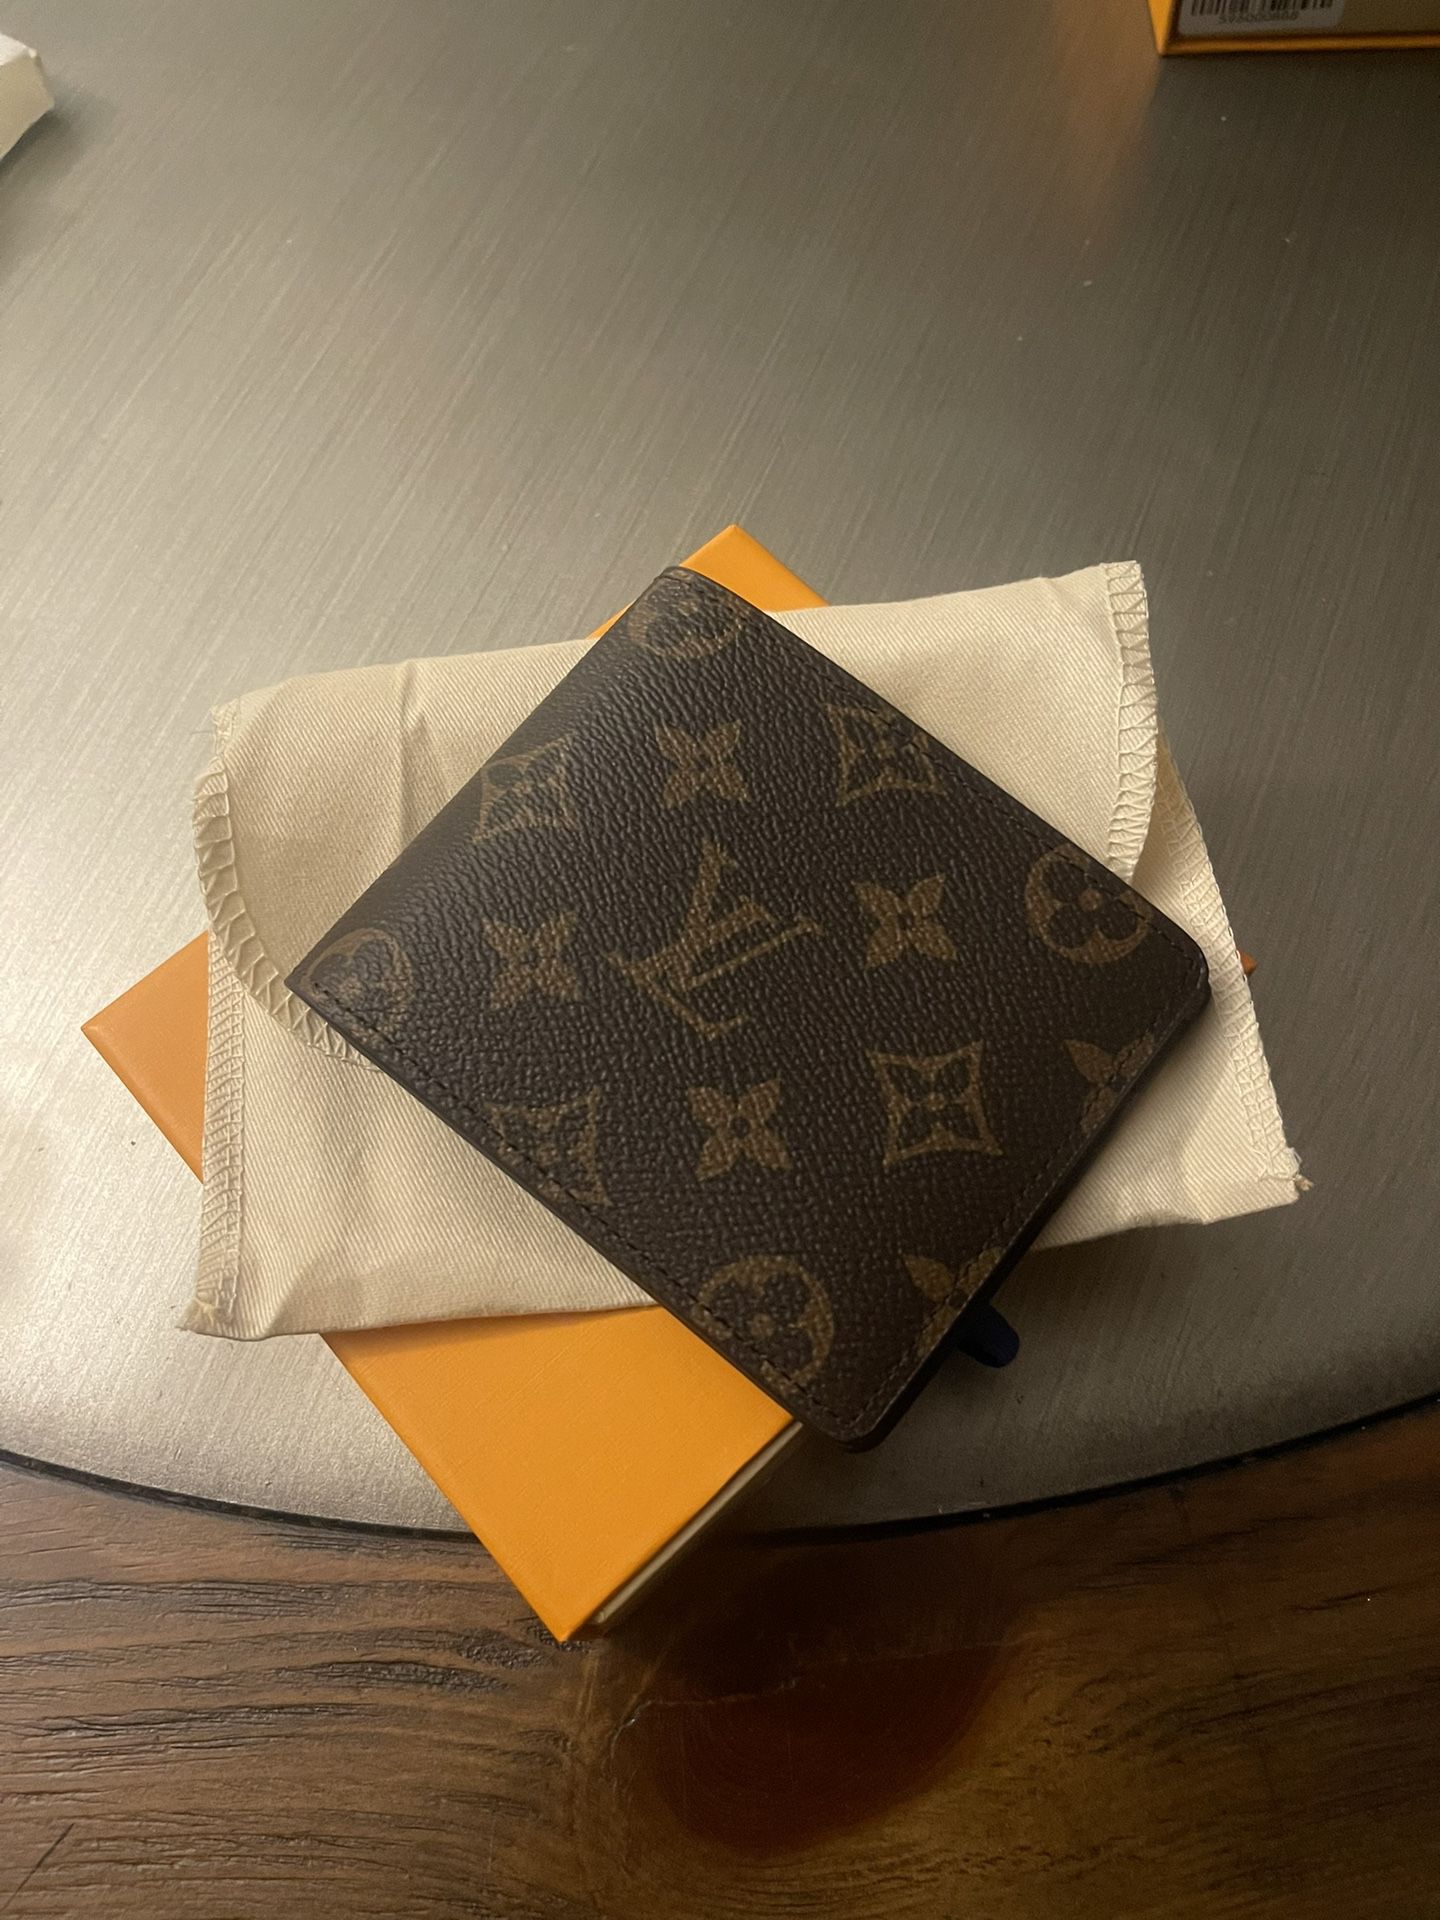 Louis Vuitton mens wallet